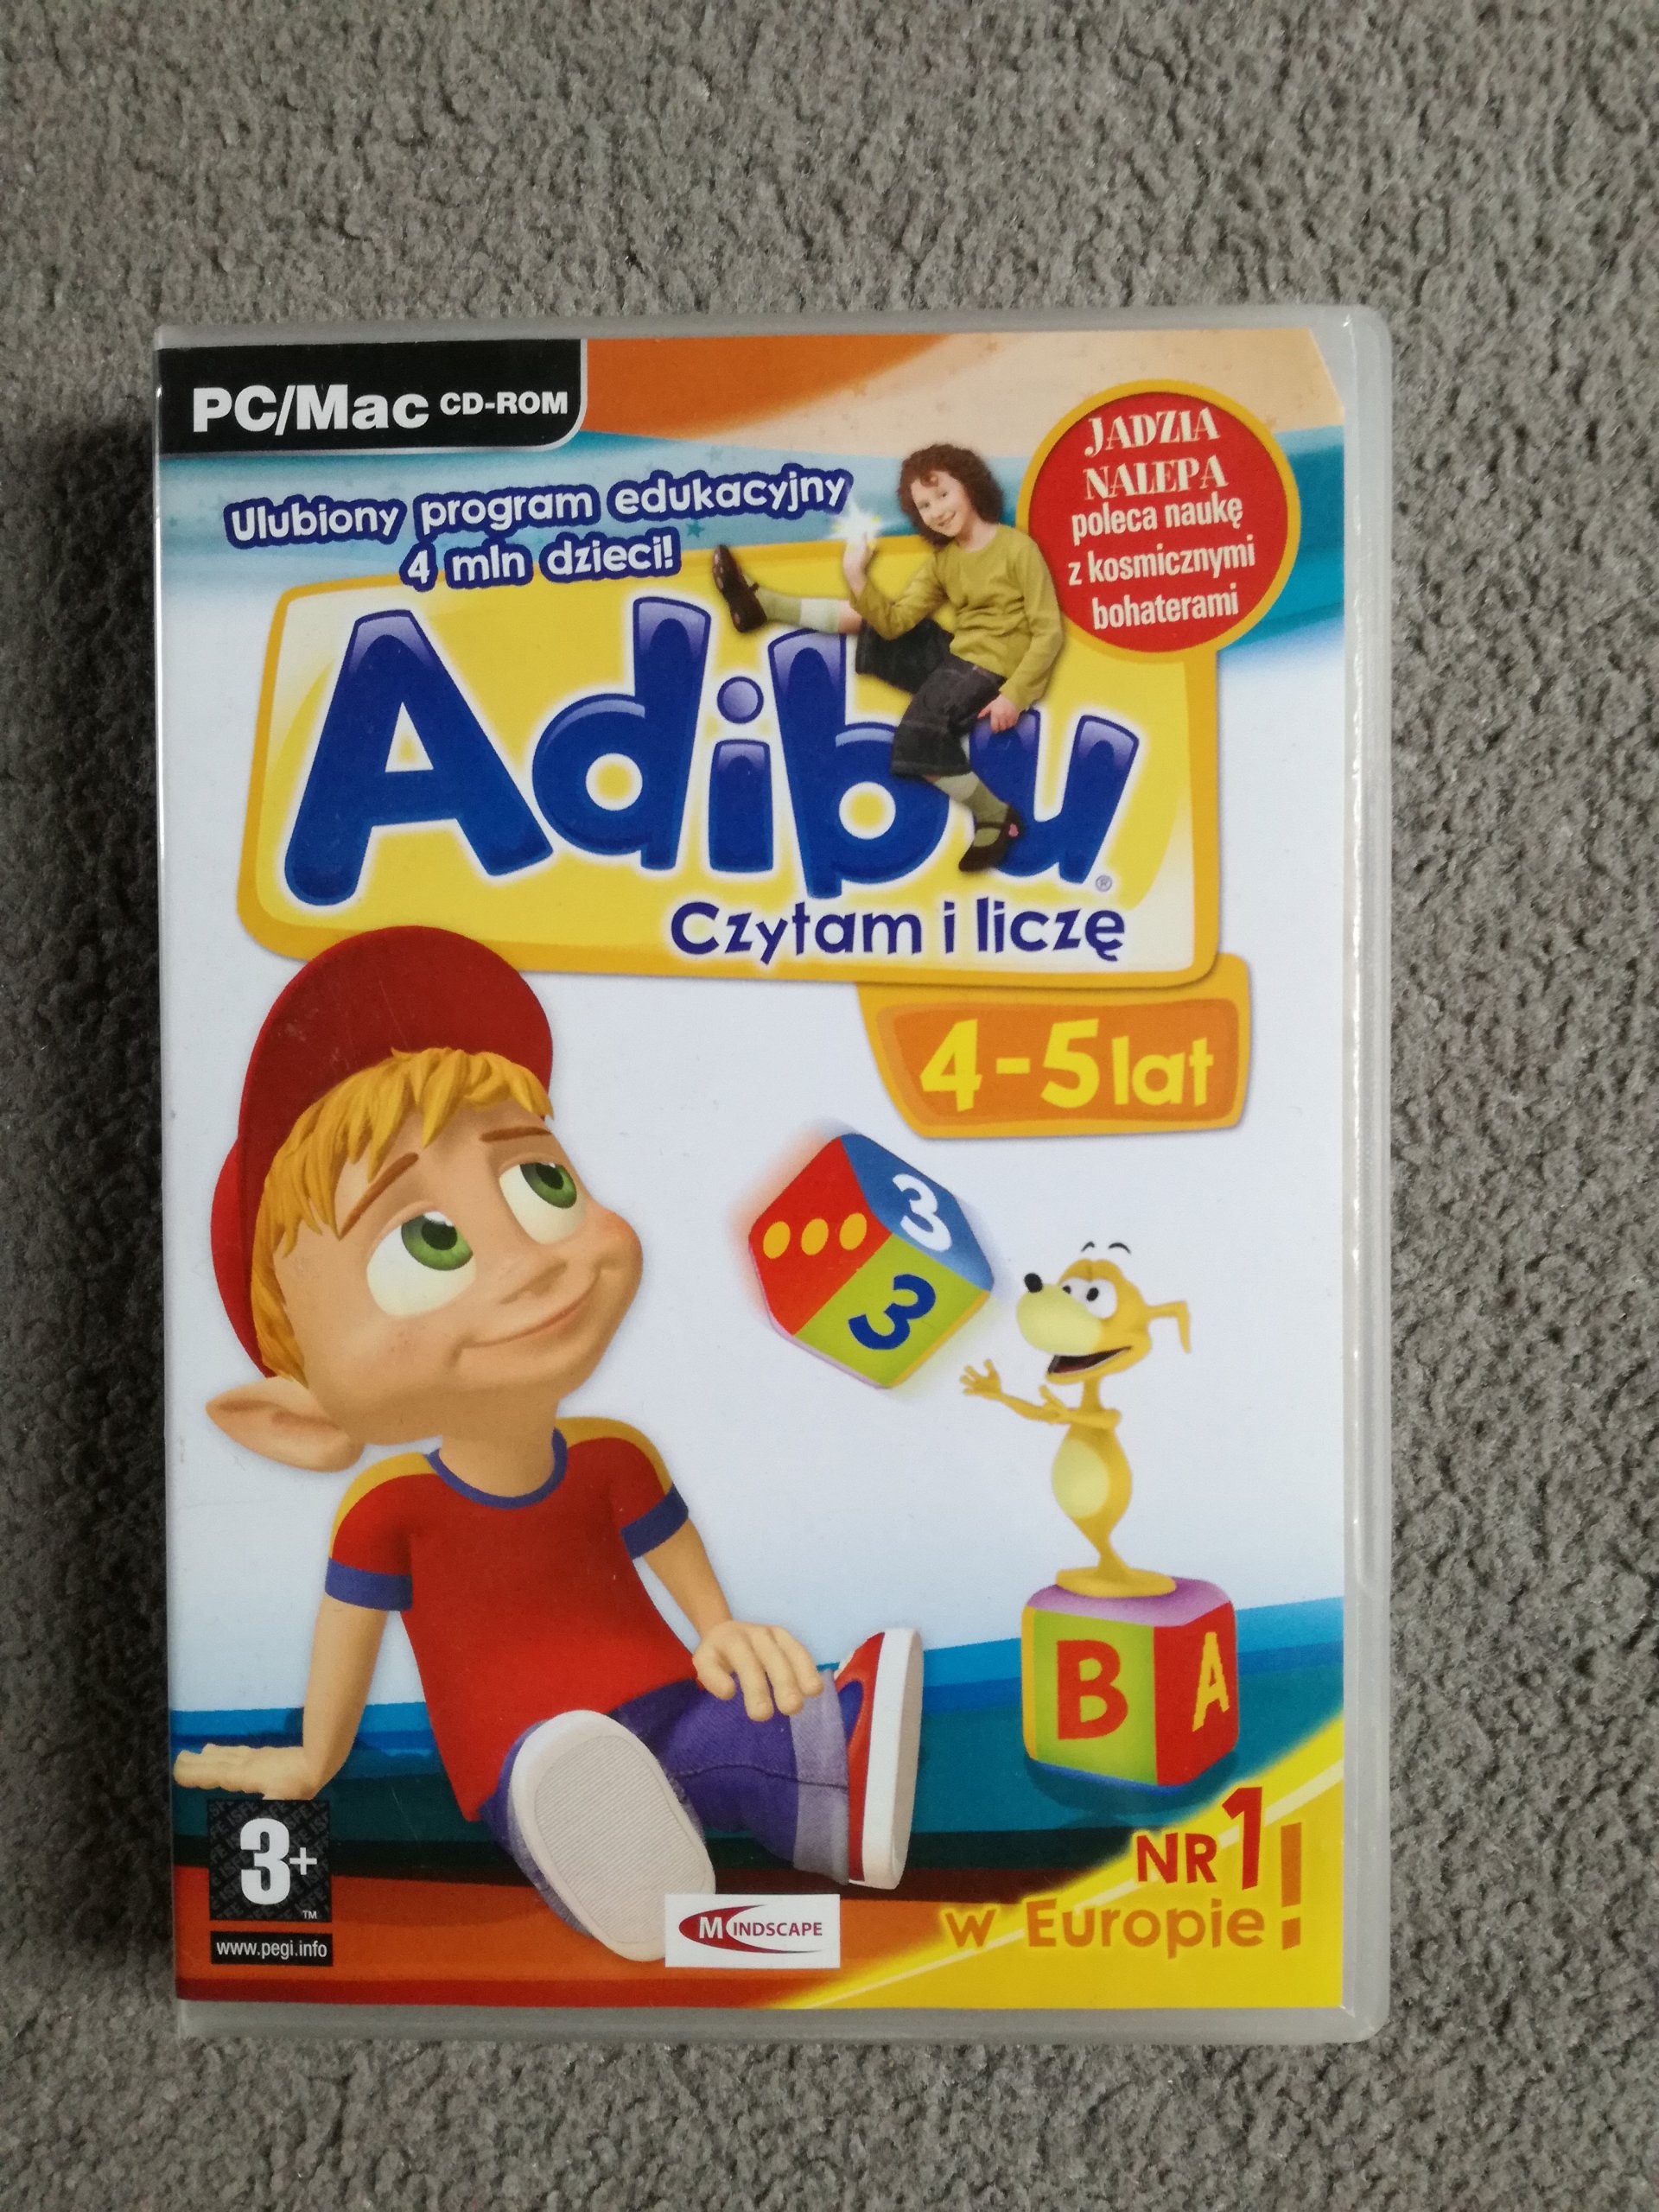 Adibu gra program edukacyjny PC/Mac cd rom